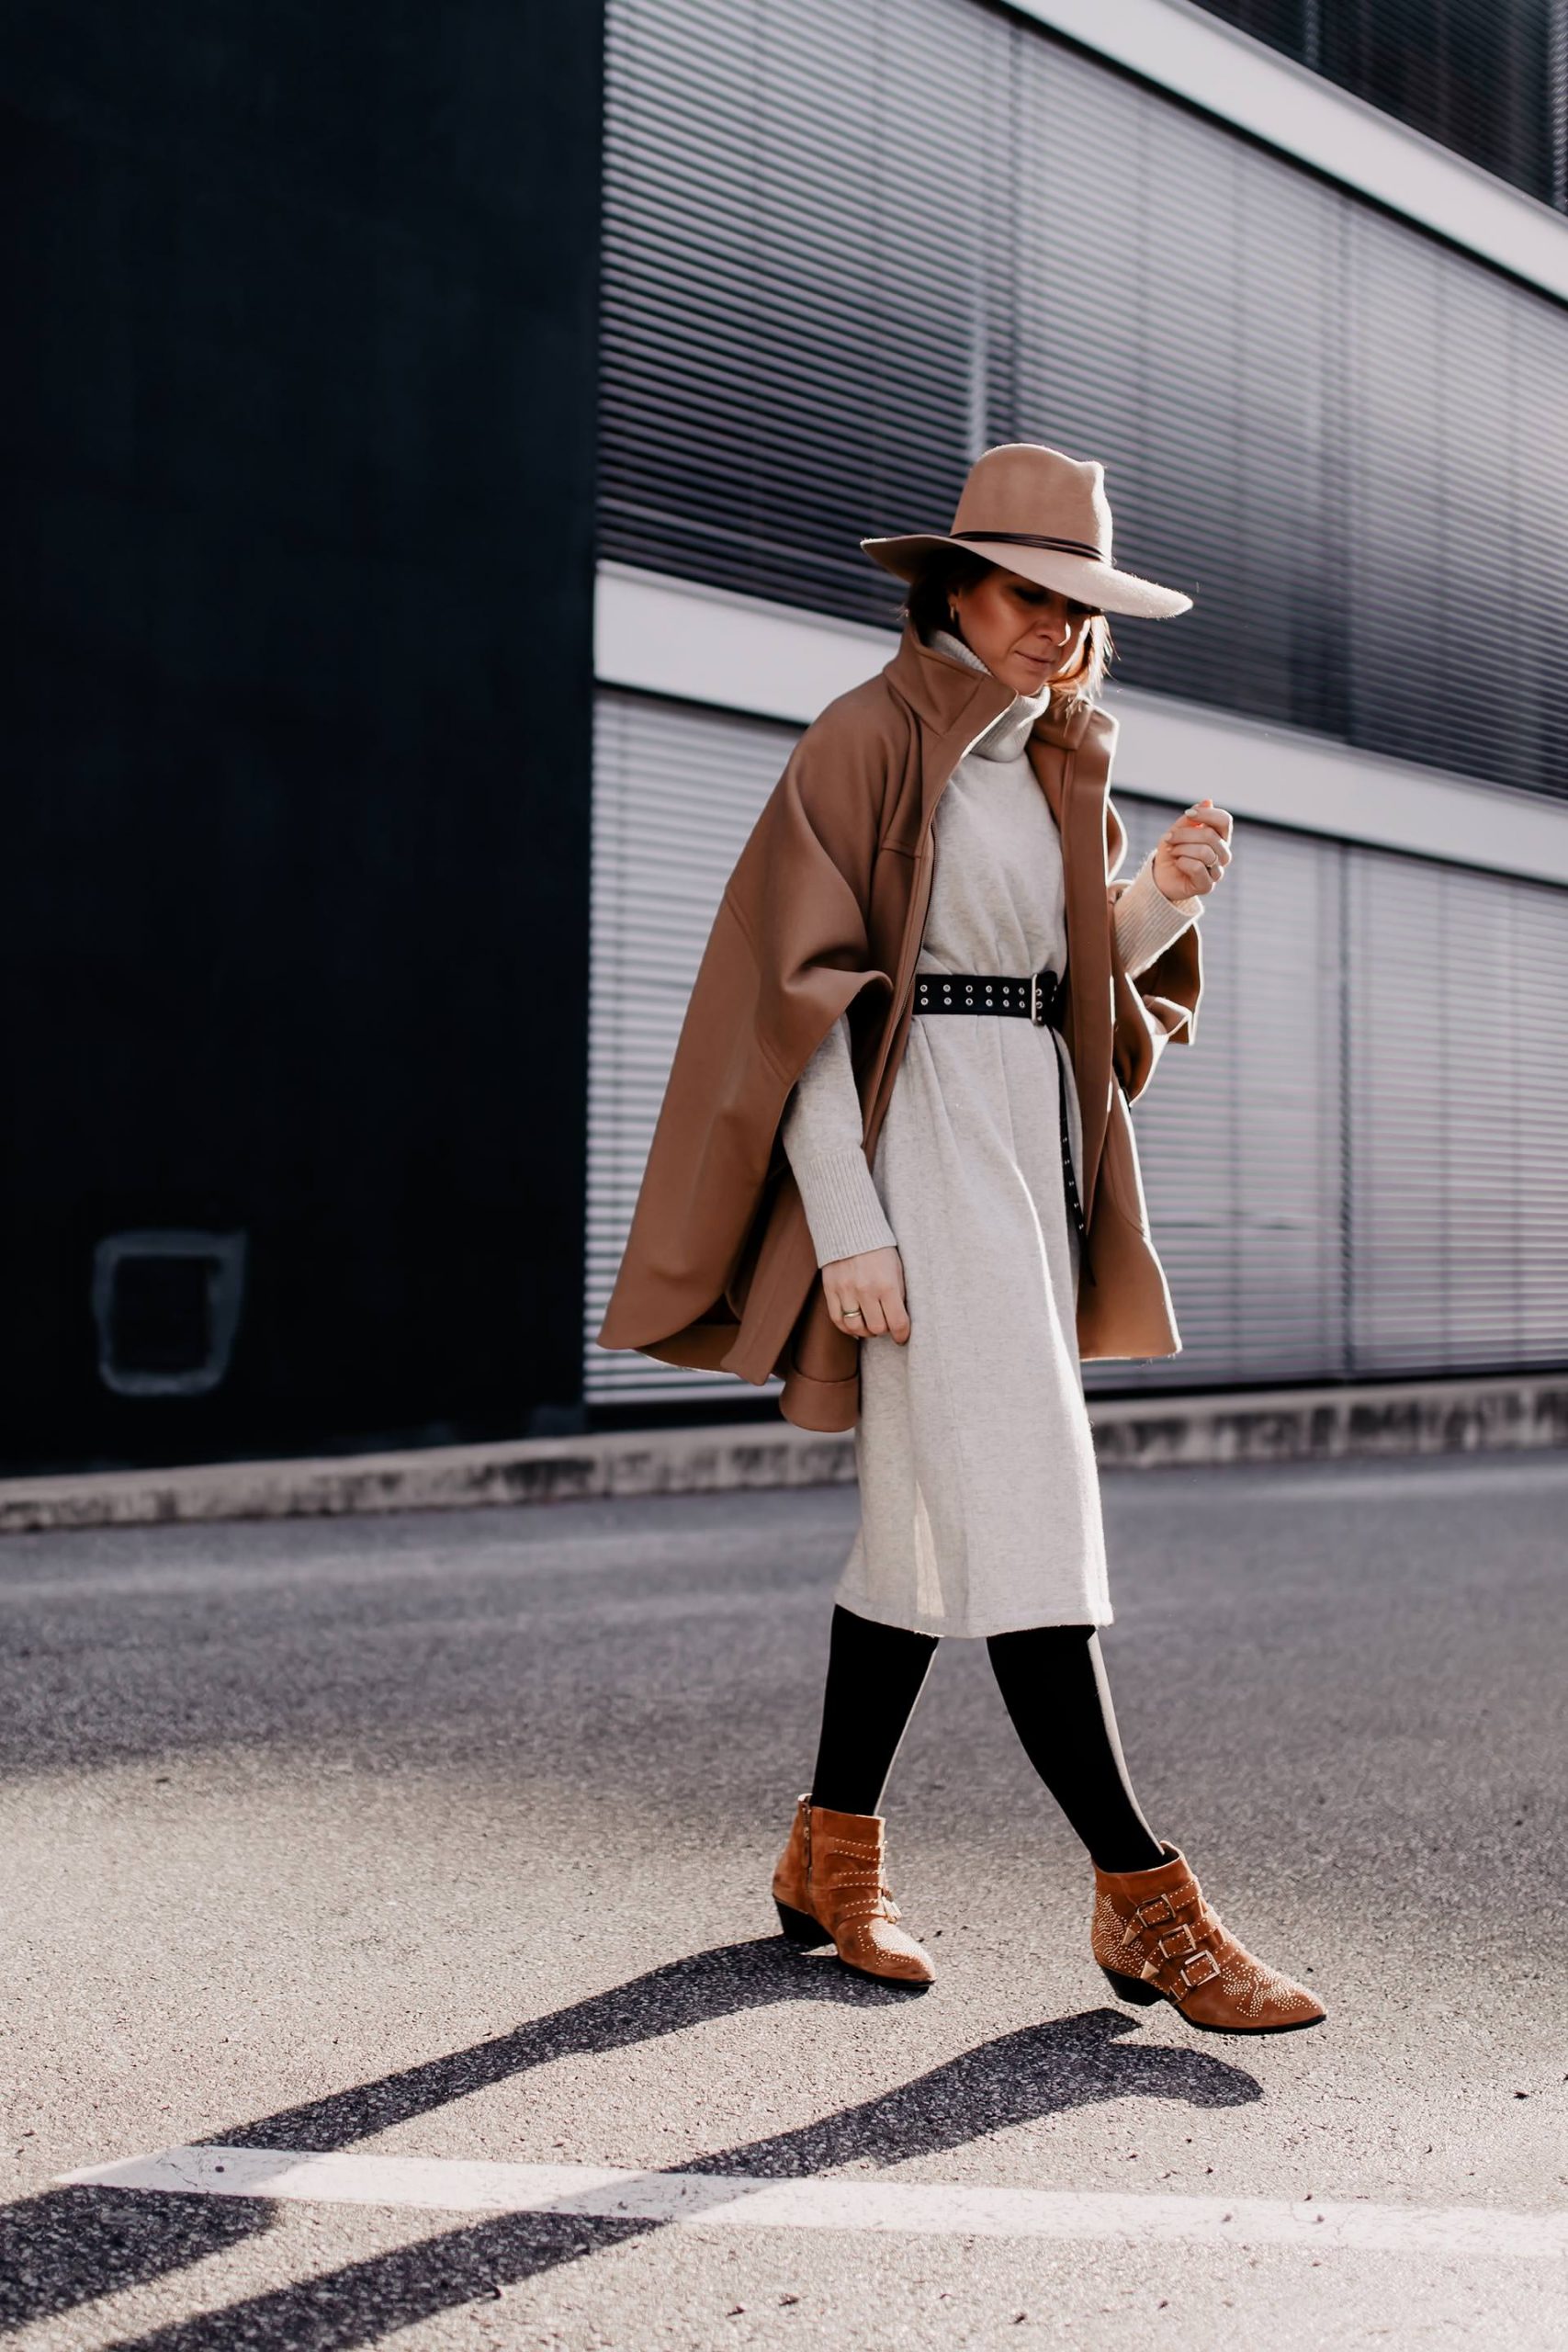 Am Modeblog liest du heute, wie gut man ein Cape kombinieren kann. Das passende Winter-Outfit gibt es kostenlos dazu und zahlreiche Shopping-Tipps für wunderschöne Cape-Outfits! www.whoismocca.com #cape #winteroutfit #modetrends